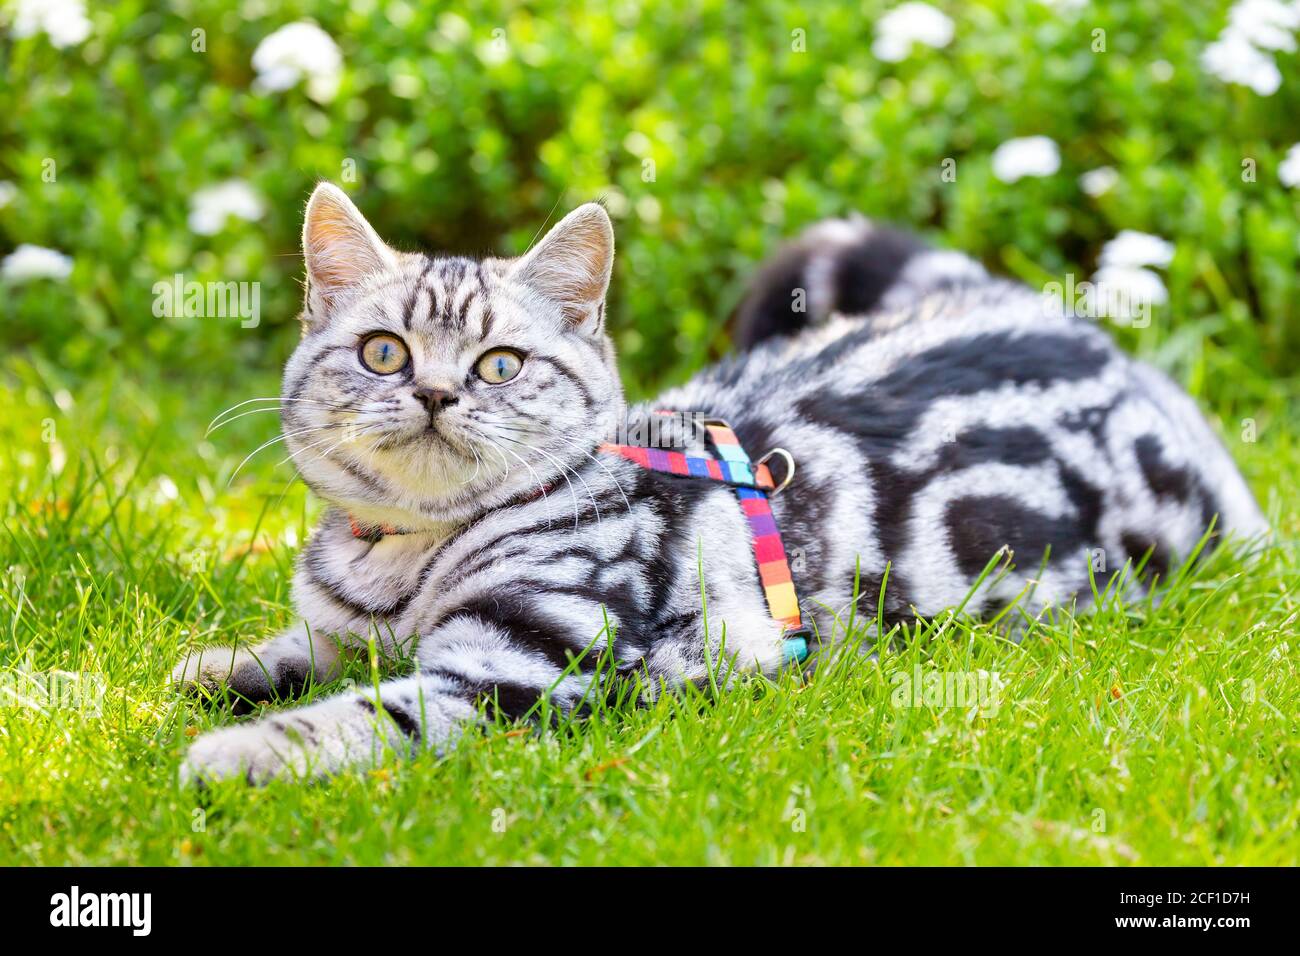 Joven británico pelo corto plata tabby pelo corto gato acostado en el jardín verde Foto de stock